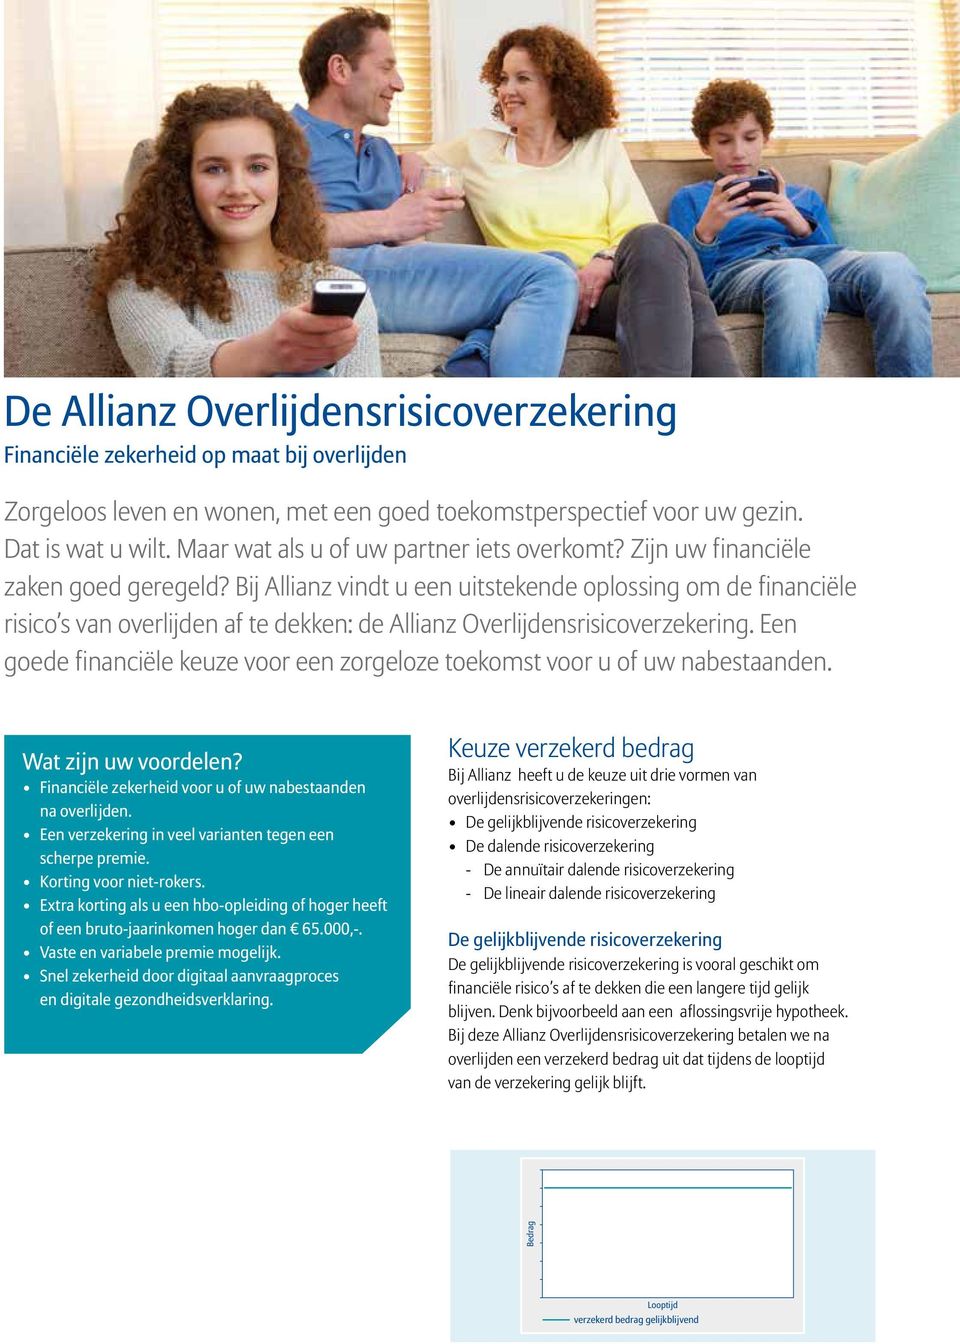 Bij Allianz vindt u een uitstekende oplossing om de financiële risico s van overlijden af te dekken: de Allianz Overlijdensrisicoverzekering.